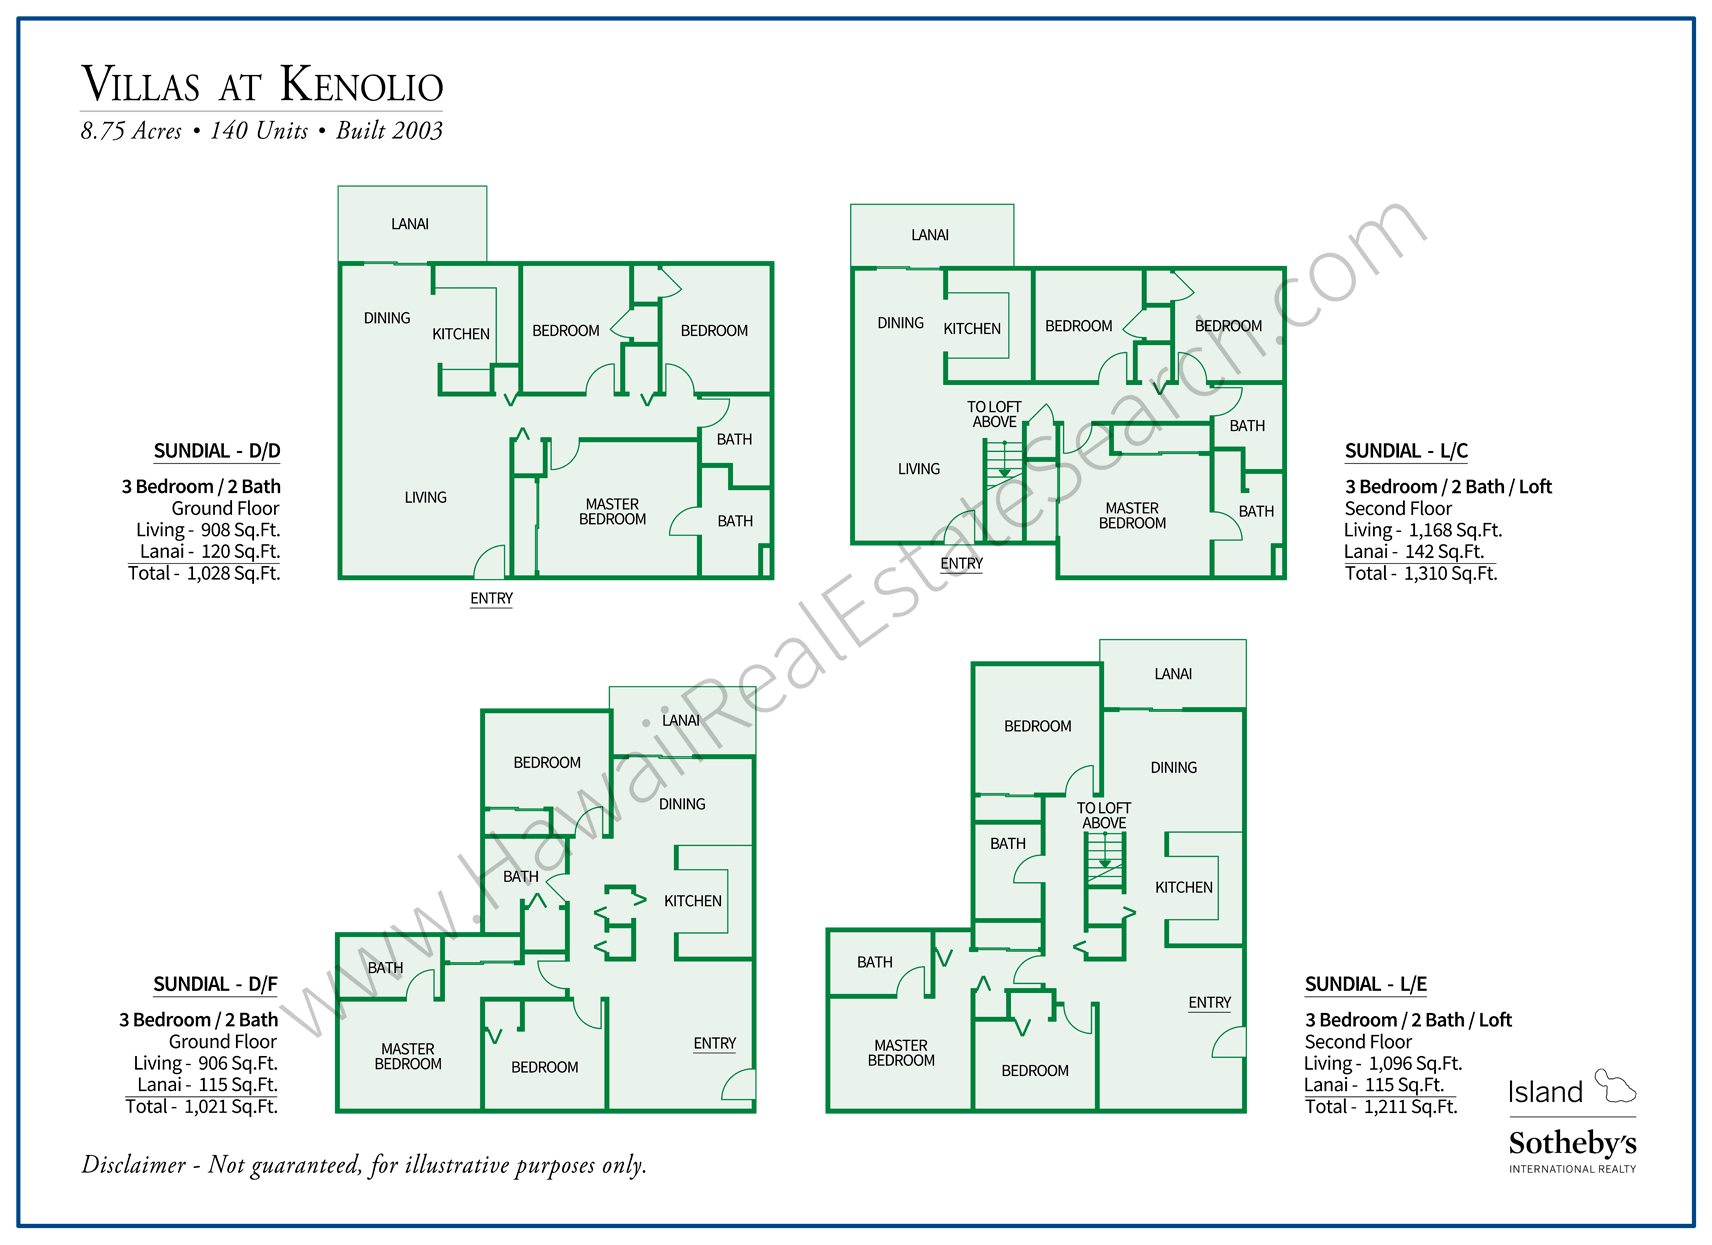 Floor Plans for Villas at Kenolio